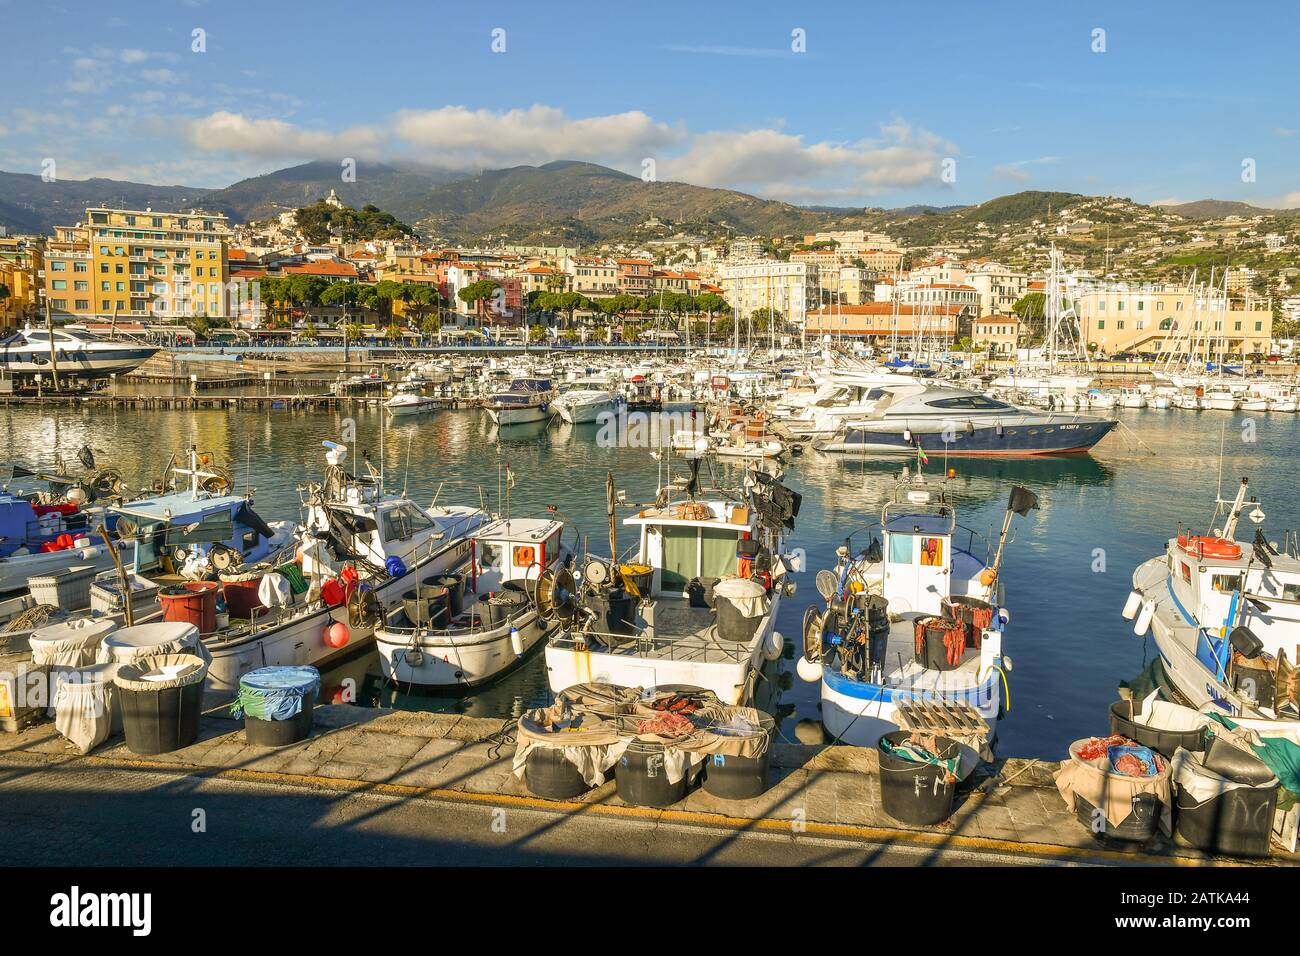 Malerische Aussicht auf den Hafen mit Fischerbooten und Luxusyachten, die an den Piers und der Küstenstadt im Hintergrund angedockt sind, Sanremo, Ligurien, Italien Stockfoto